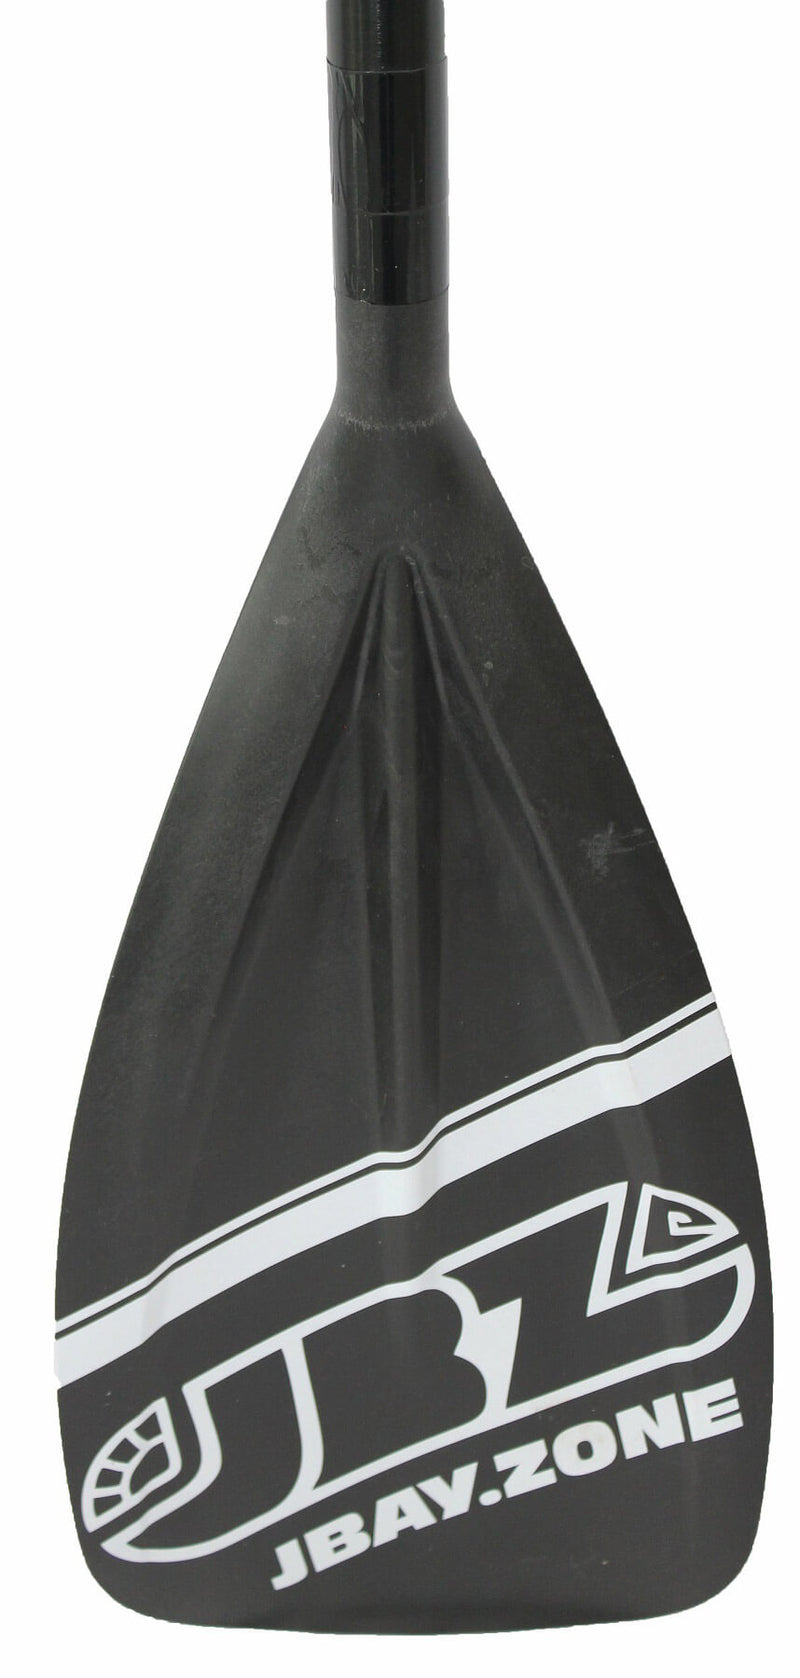 Pagaia Estensibile in Alluminio 170-215 cm per SUP Kayak Canoa Jbay.Zone Black Edition-2